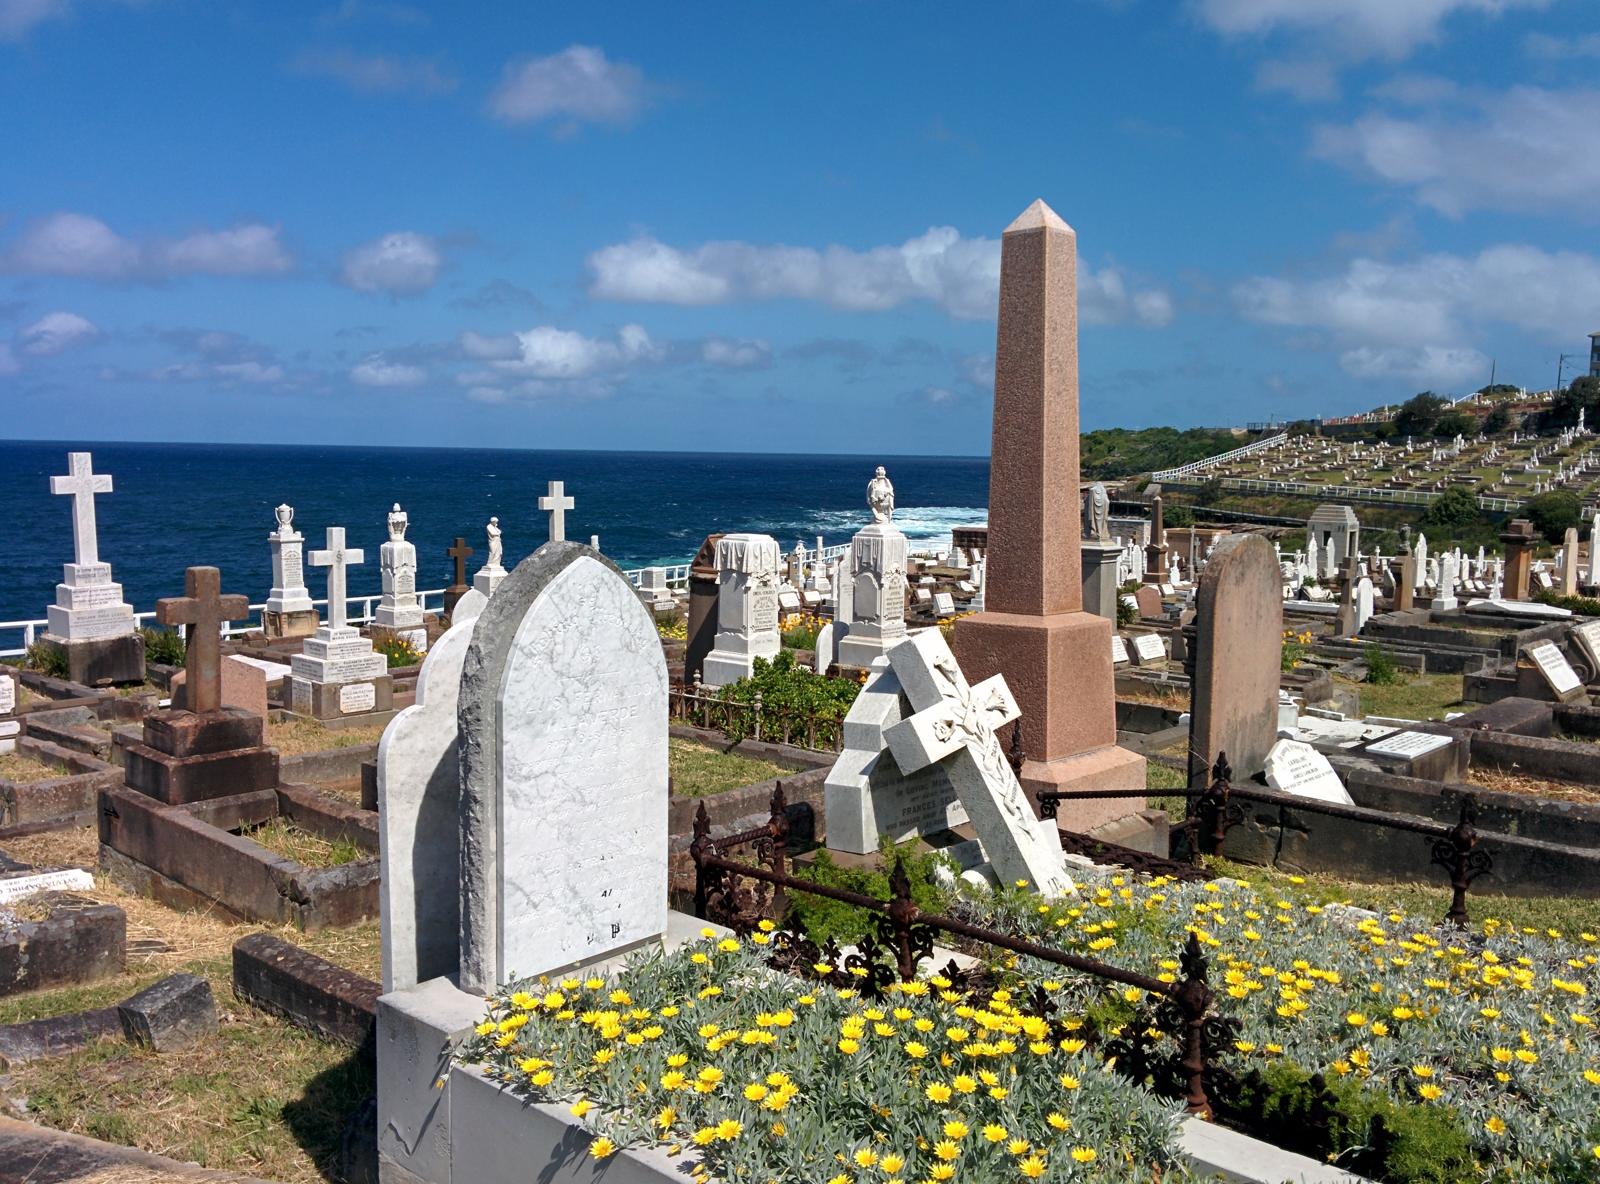 A Cemetery near Bondi Beach